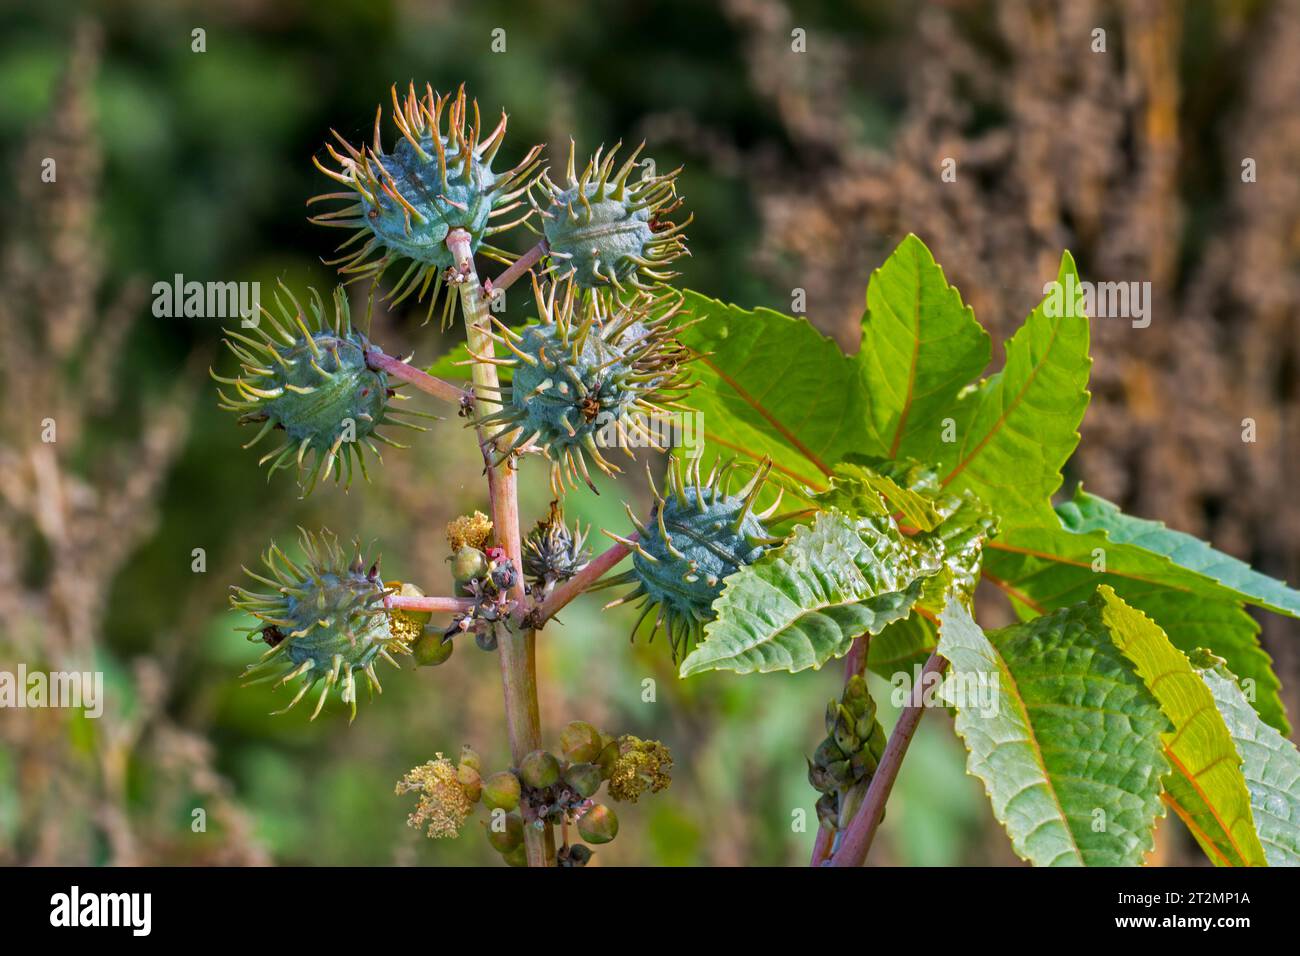 Rizinusbohnen-/Rizinusölpflanze (Ricinus communis), Nahaufnahme von Samenkapseln / Früchten und Blättern im Herbst, heimisch im Mittelmeer, Afrika und Indien Stockfoto